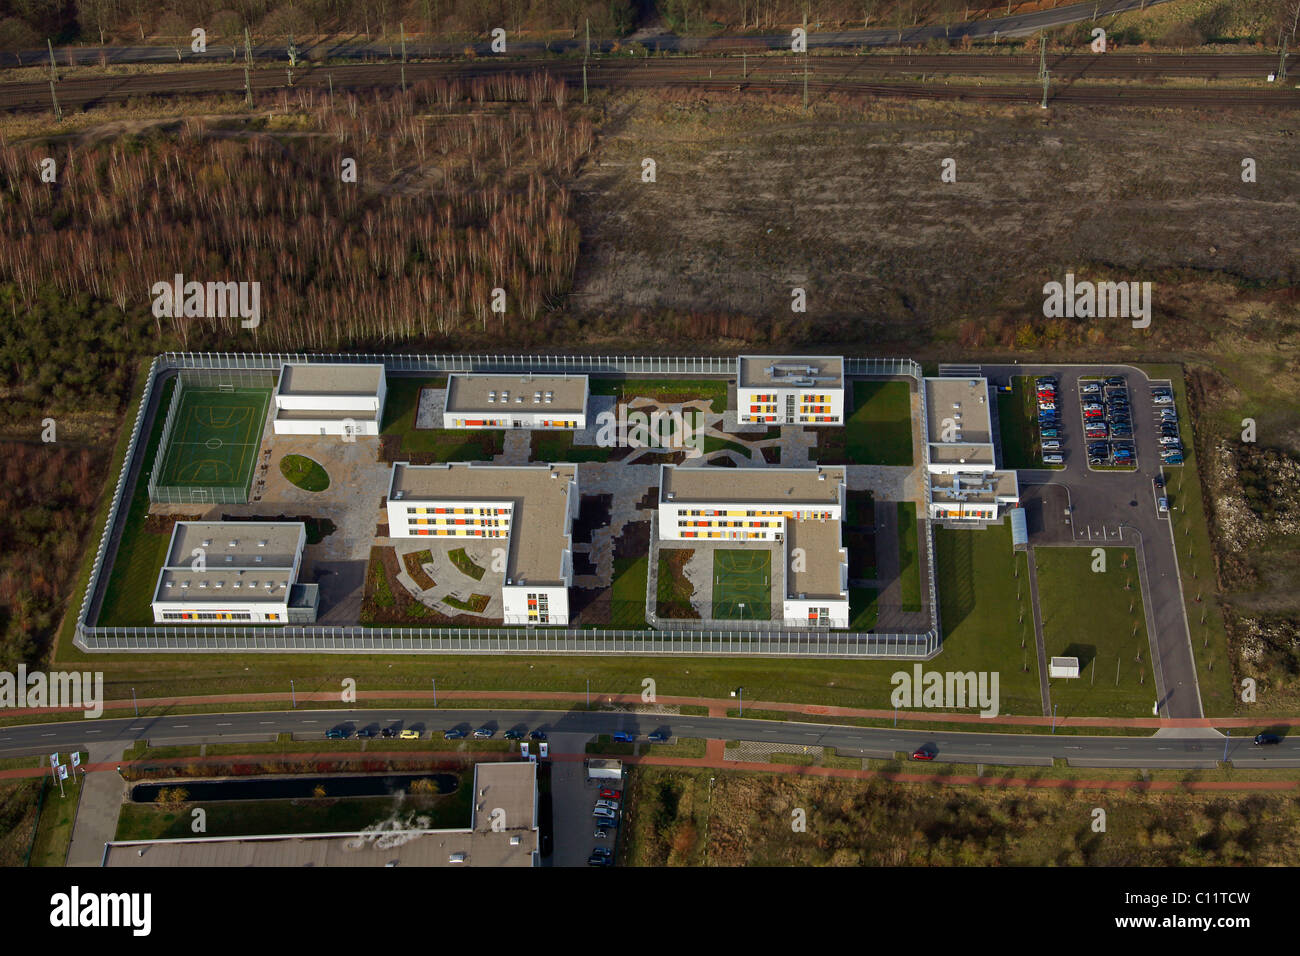 Aerial view, Forensik Friemersheim forensic clinic, Hohenbudberg industrial park, Rheinhausen, Duisburg, Ruhrgebiet region Stock Photo